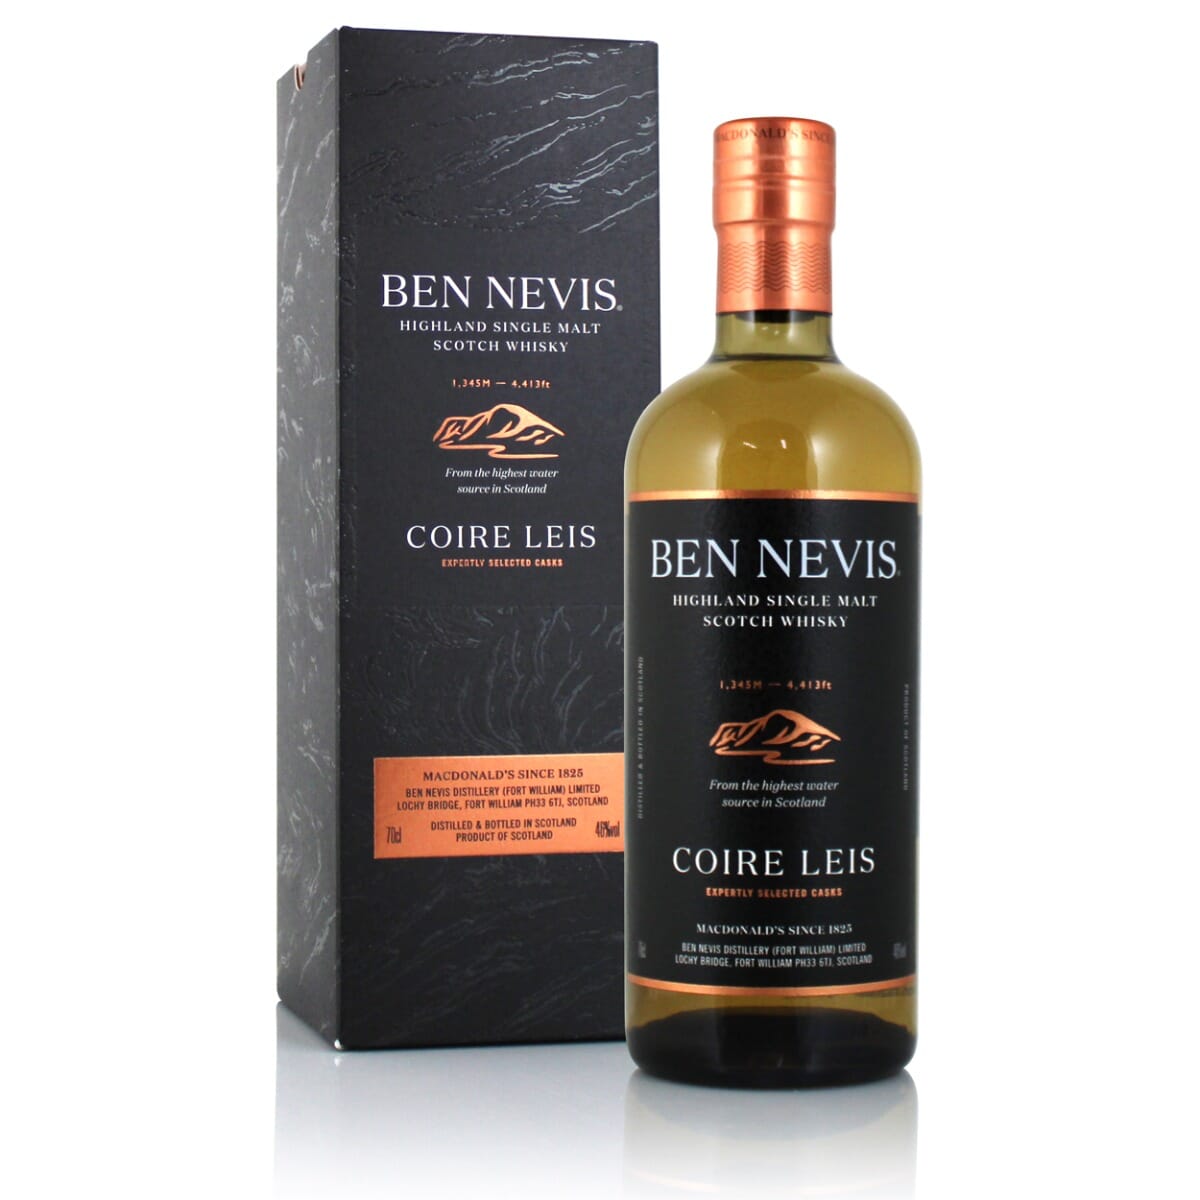 Ben Nevis Coire Leis Scotch Whisky